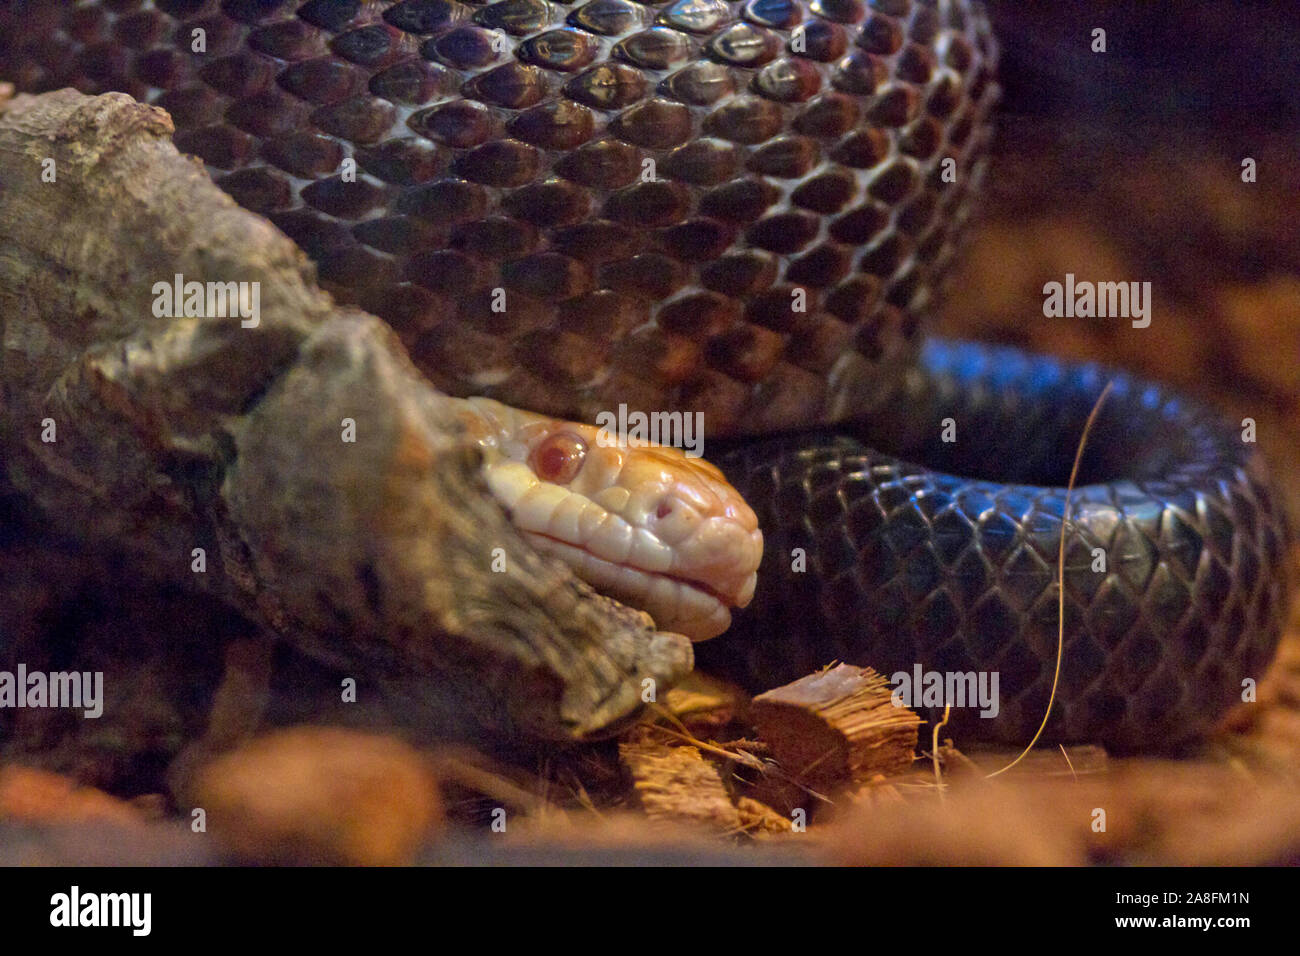 La cabeza de una serpiente pálido mira desde debajo de las bobinas de una gran serpiente negra Foto de stock